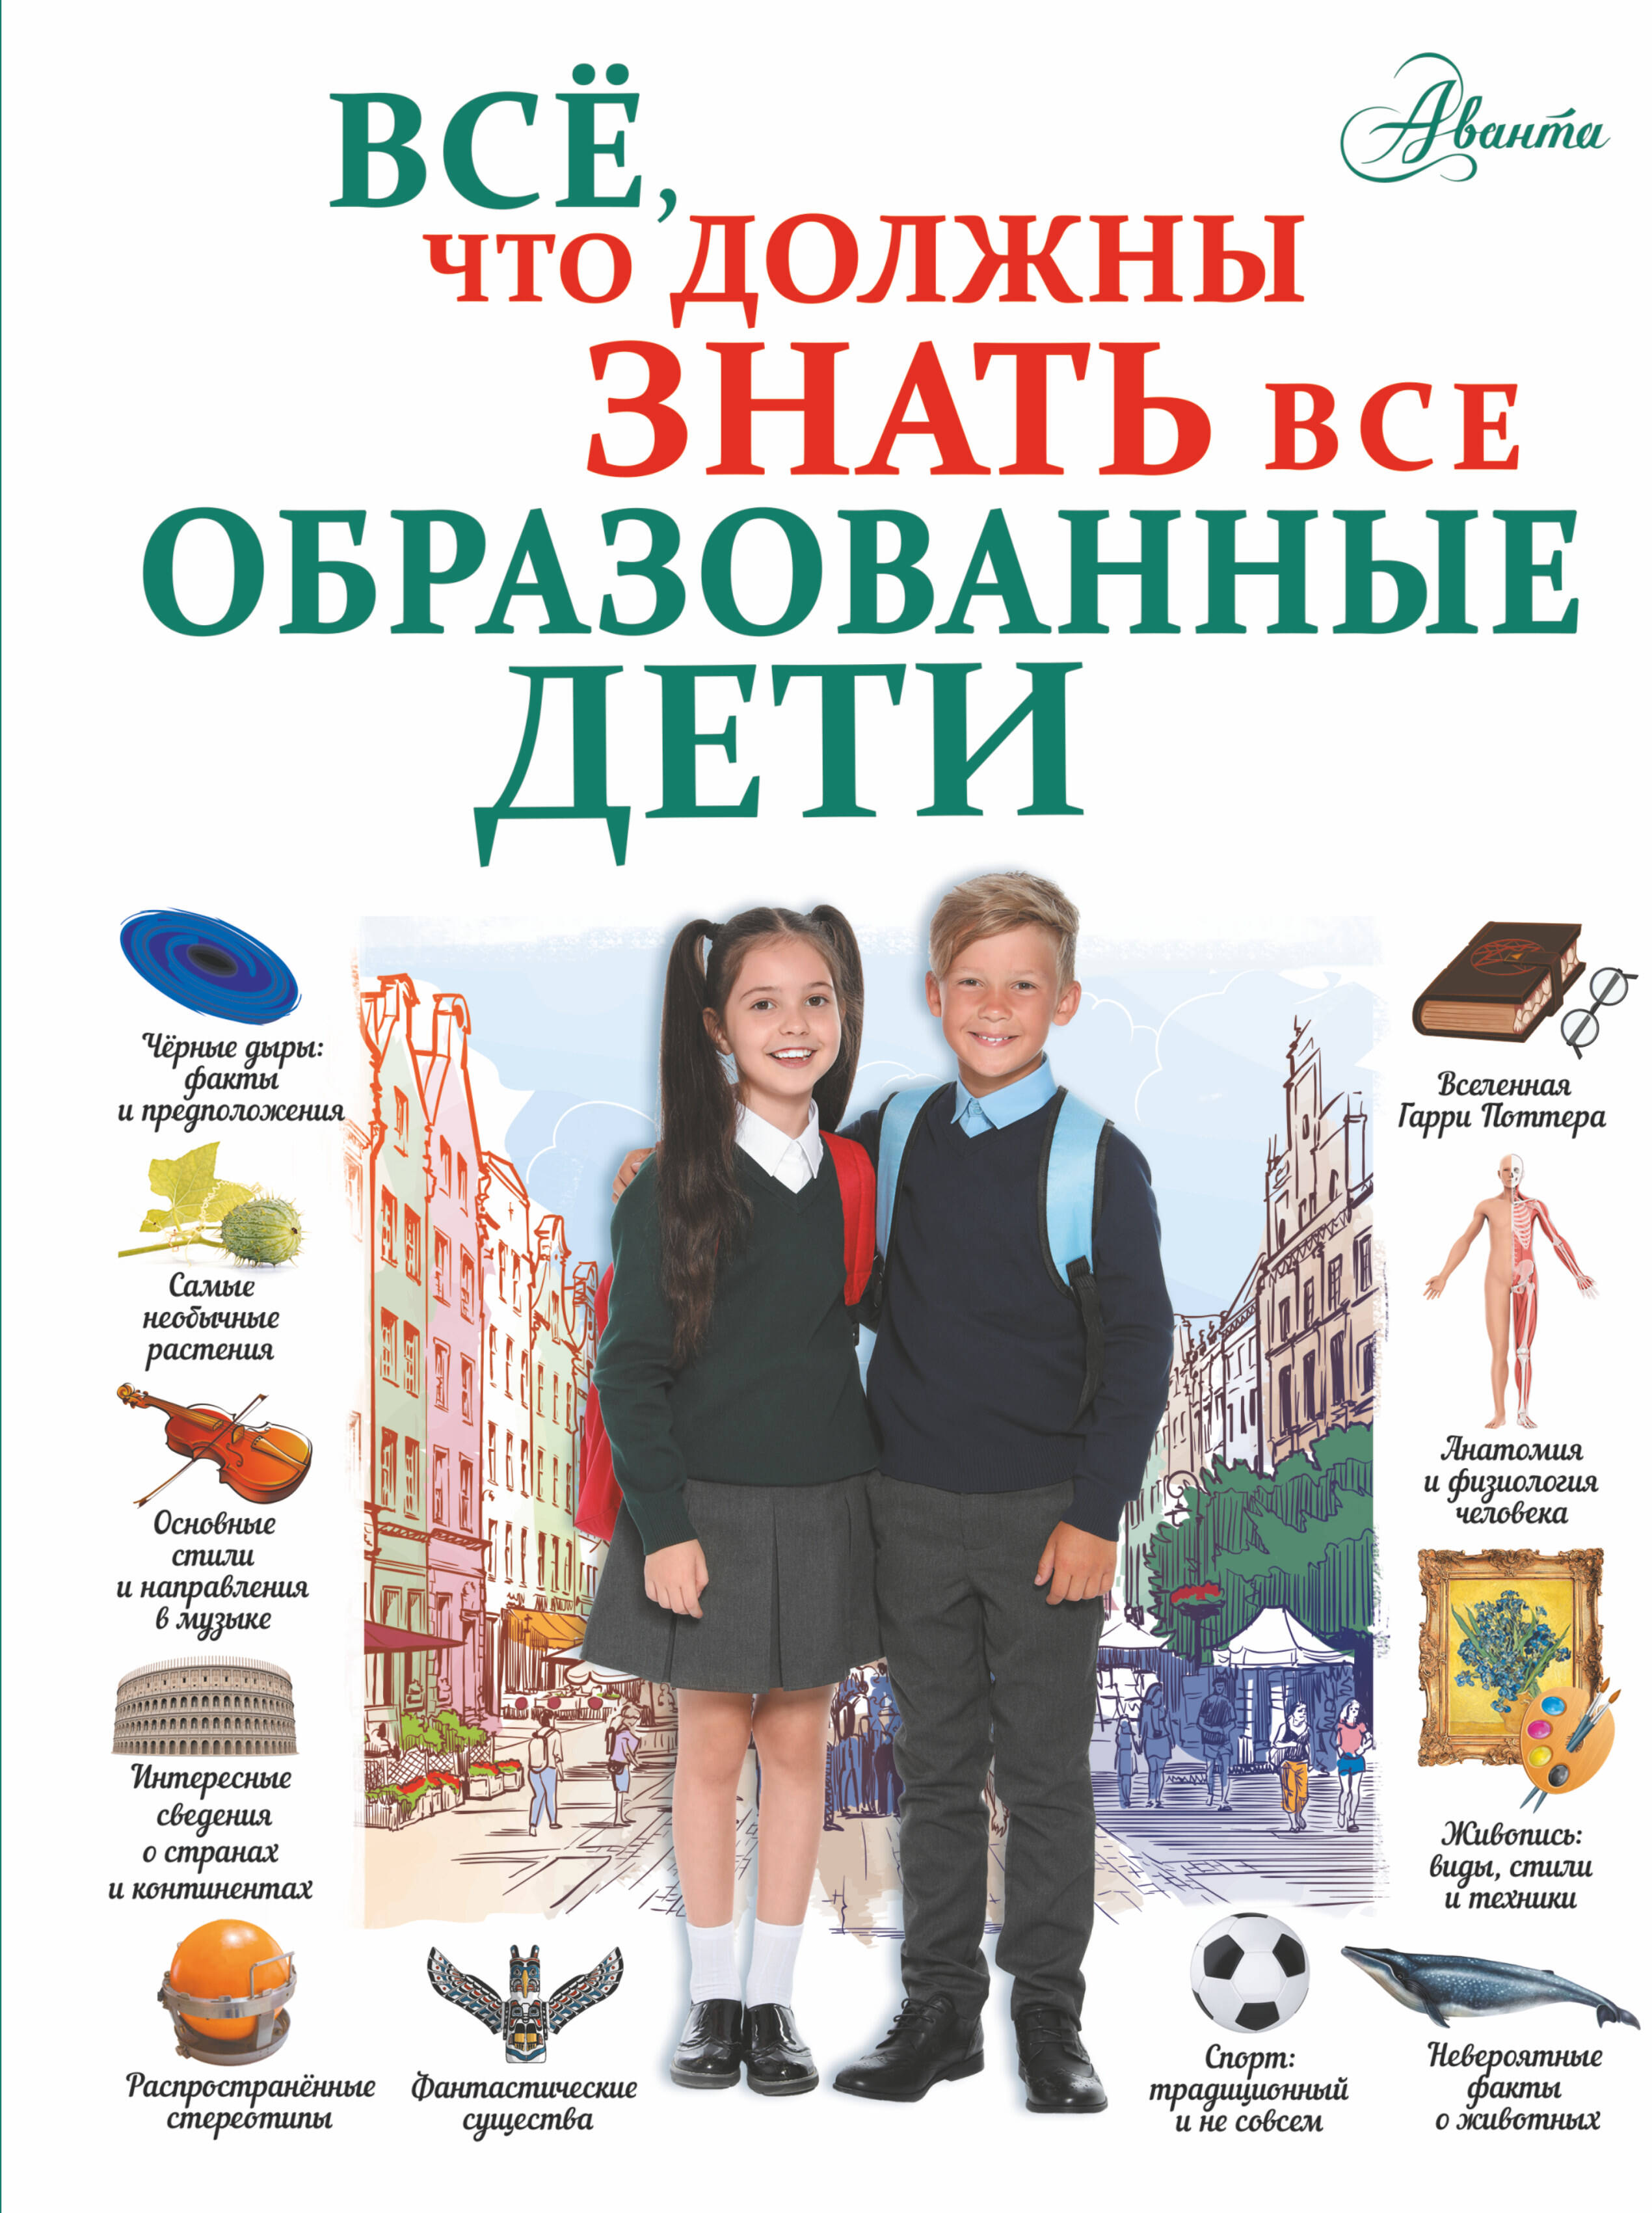 Шибко Елена Сергеевна Всё, что должны знать все образованные дети - страница 0